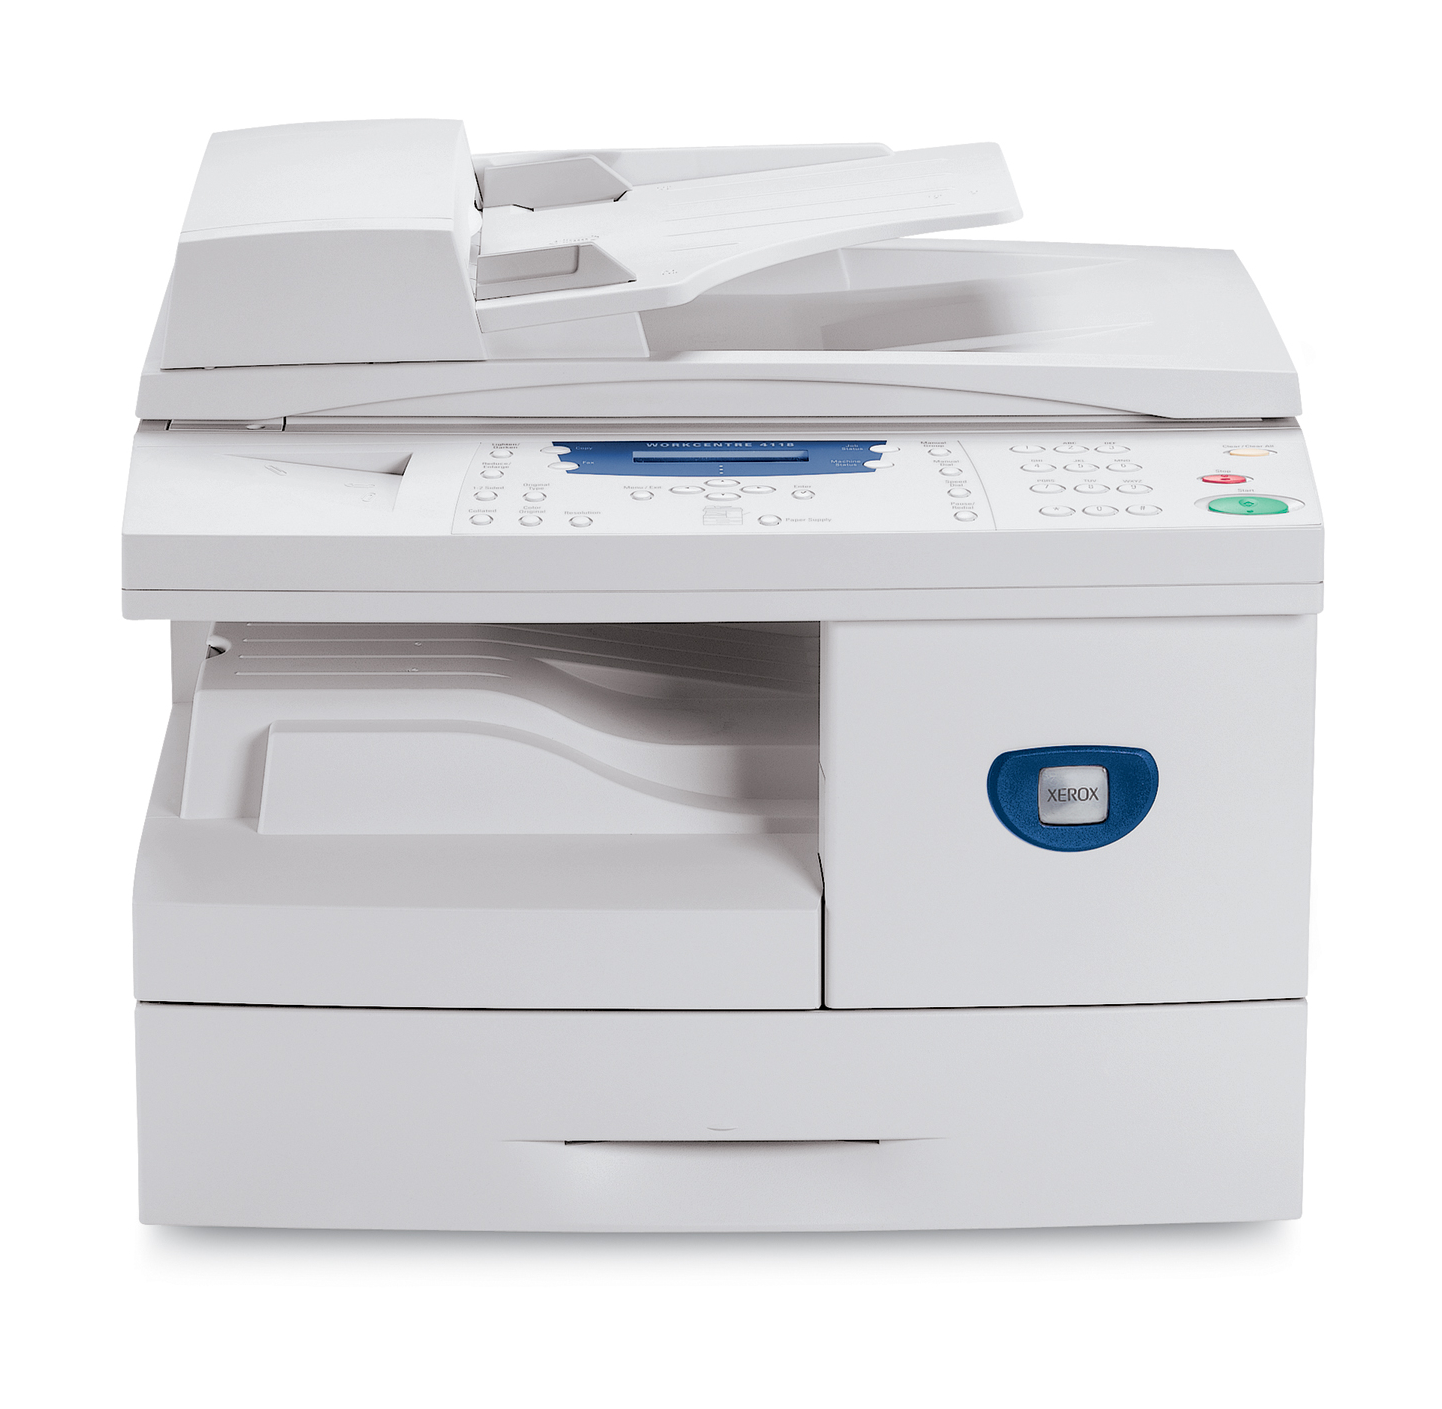 Impresora-copiadora Xerox WorkCentre 4118X con escáner en color y fax,  alimentador automático y un año de garantía a domicilio. 4118VX - Xerox